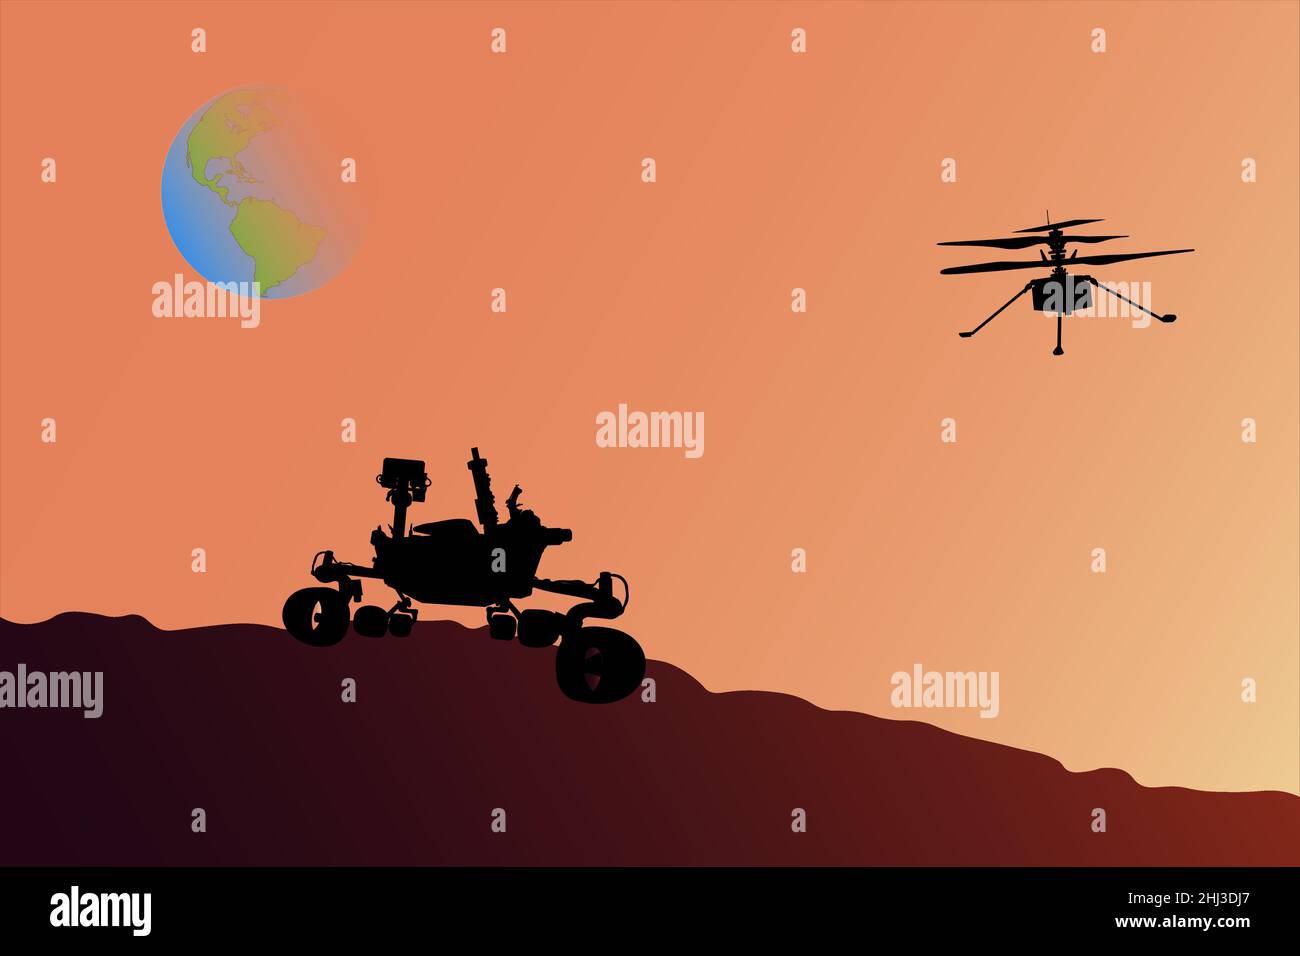 Marte rover e elicottero sulla superficie Marte di fronte al sole con il pianeta Terra sul terreno di imballaggio. Marte esplorazione concetto. Illustrazione vettoriale. Illustrazione Vettoriale